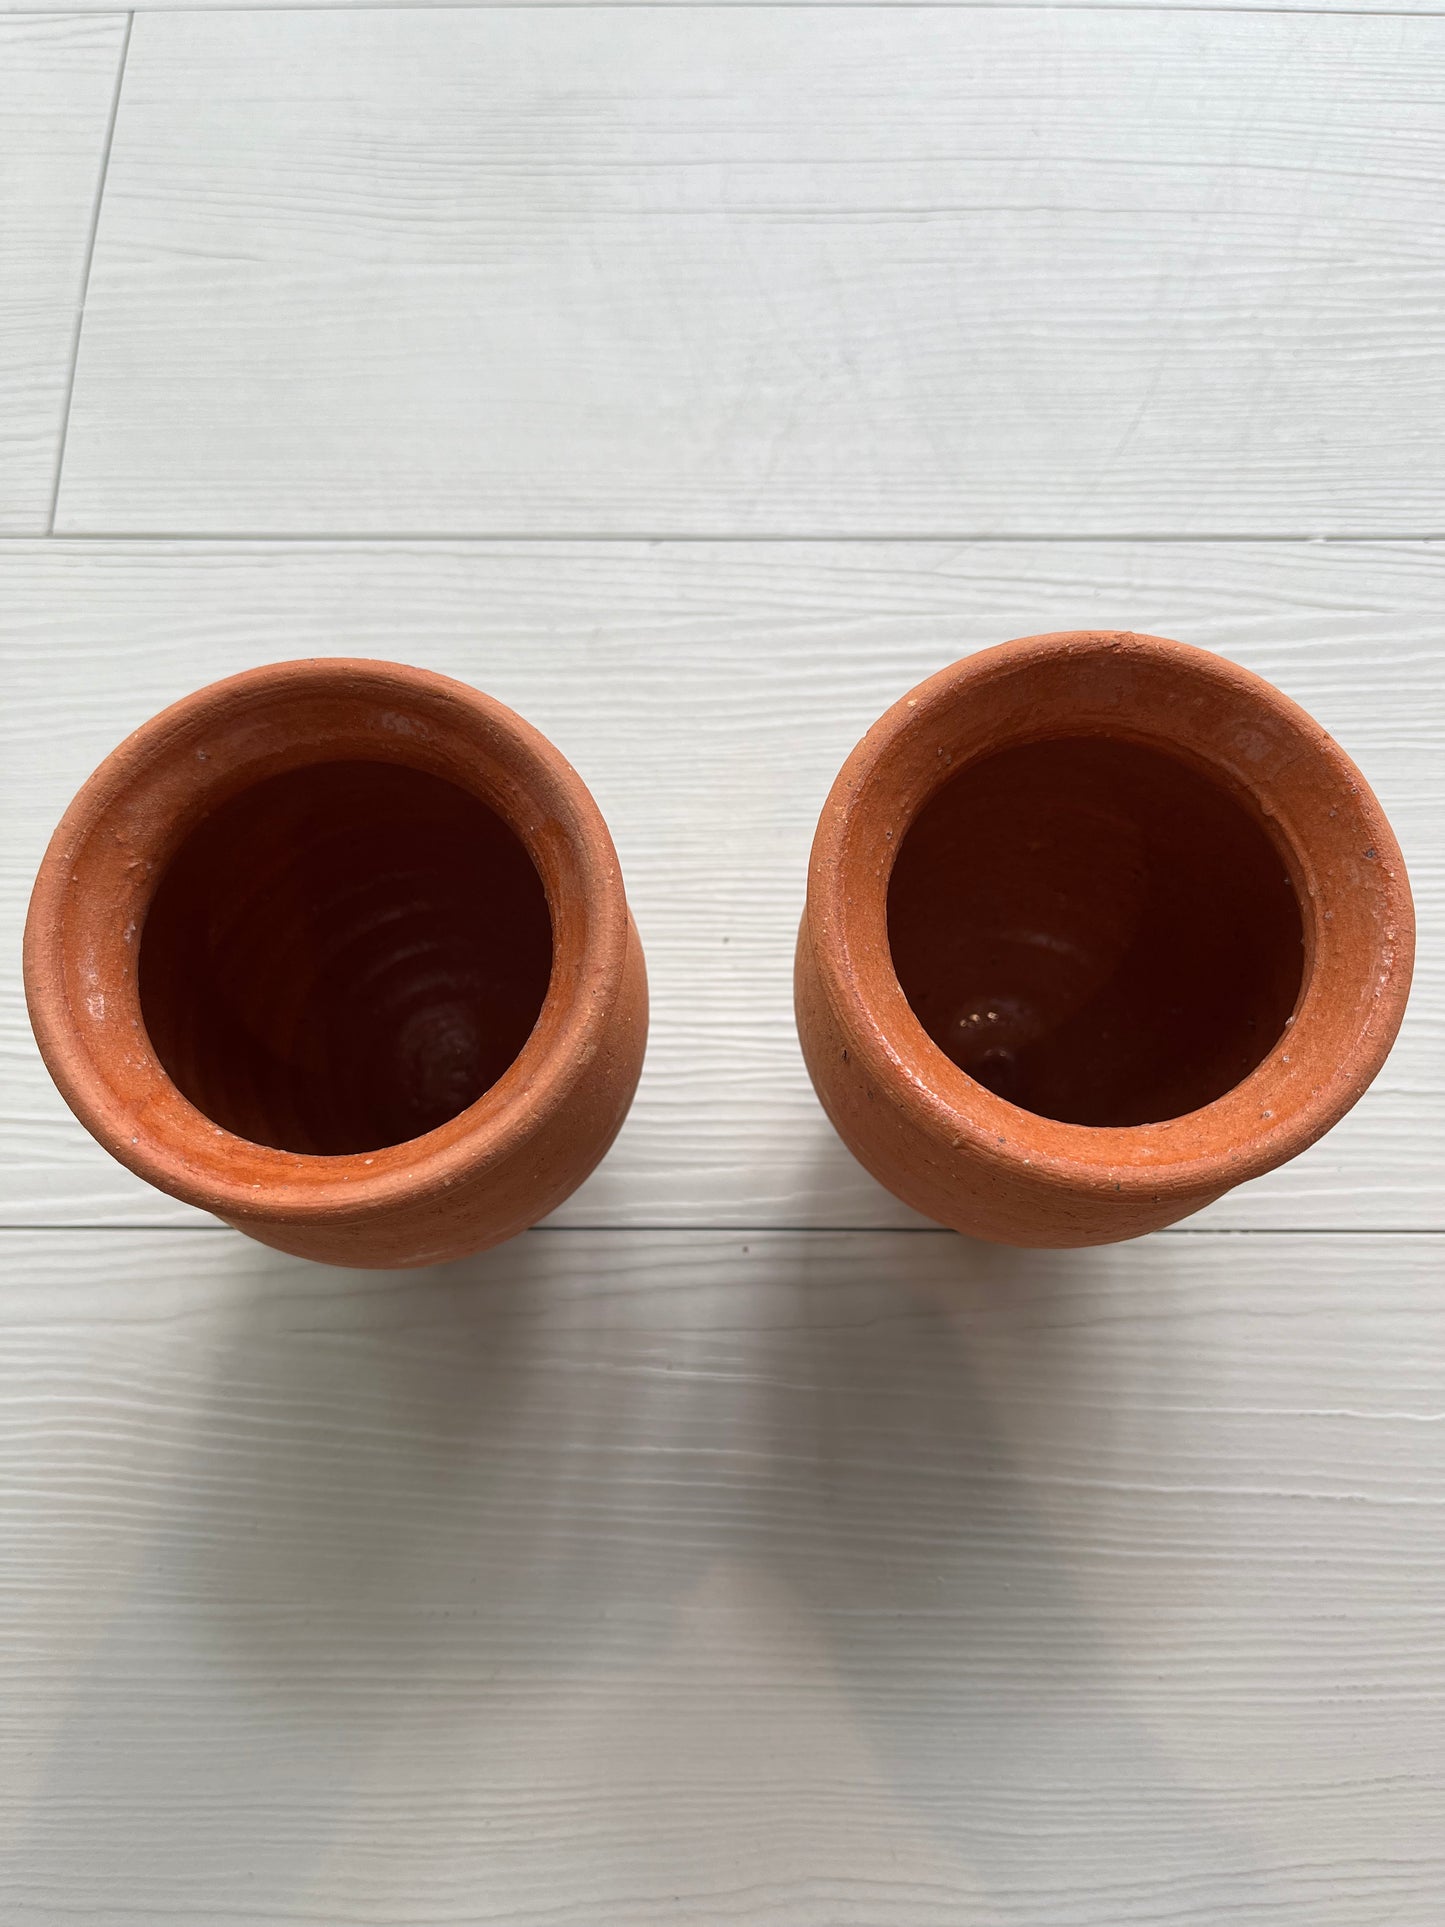 Ritual Clay Cups